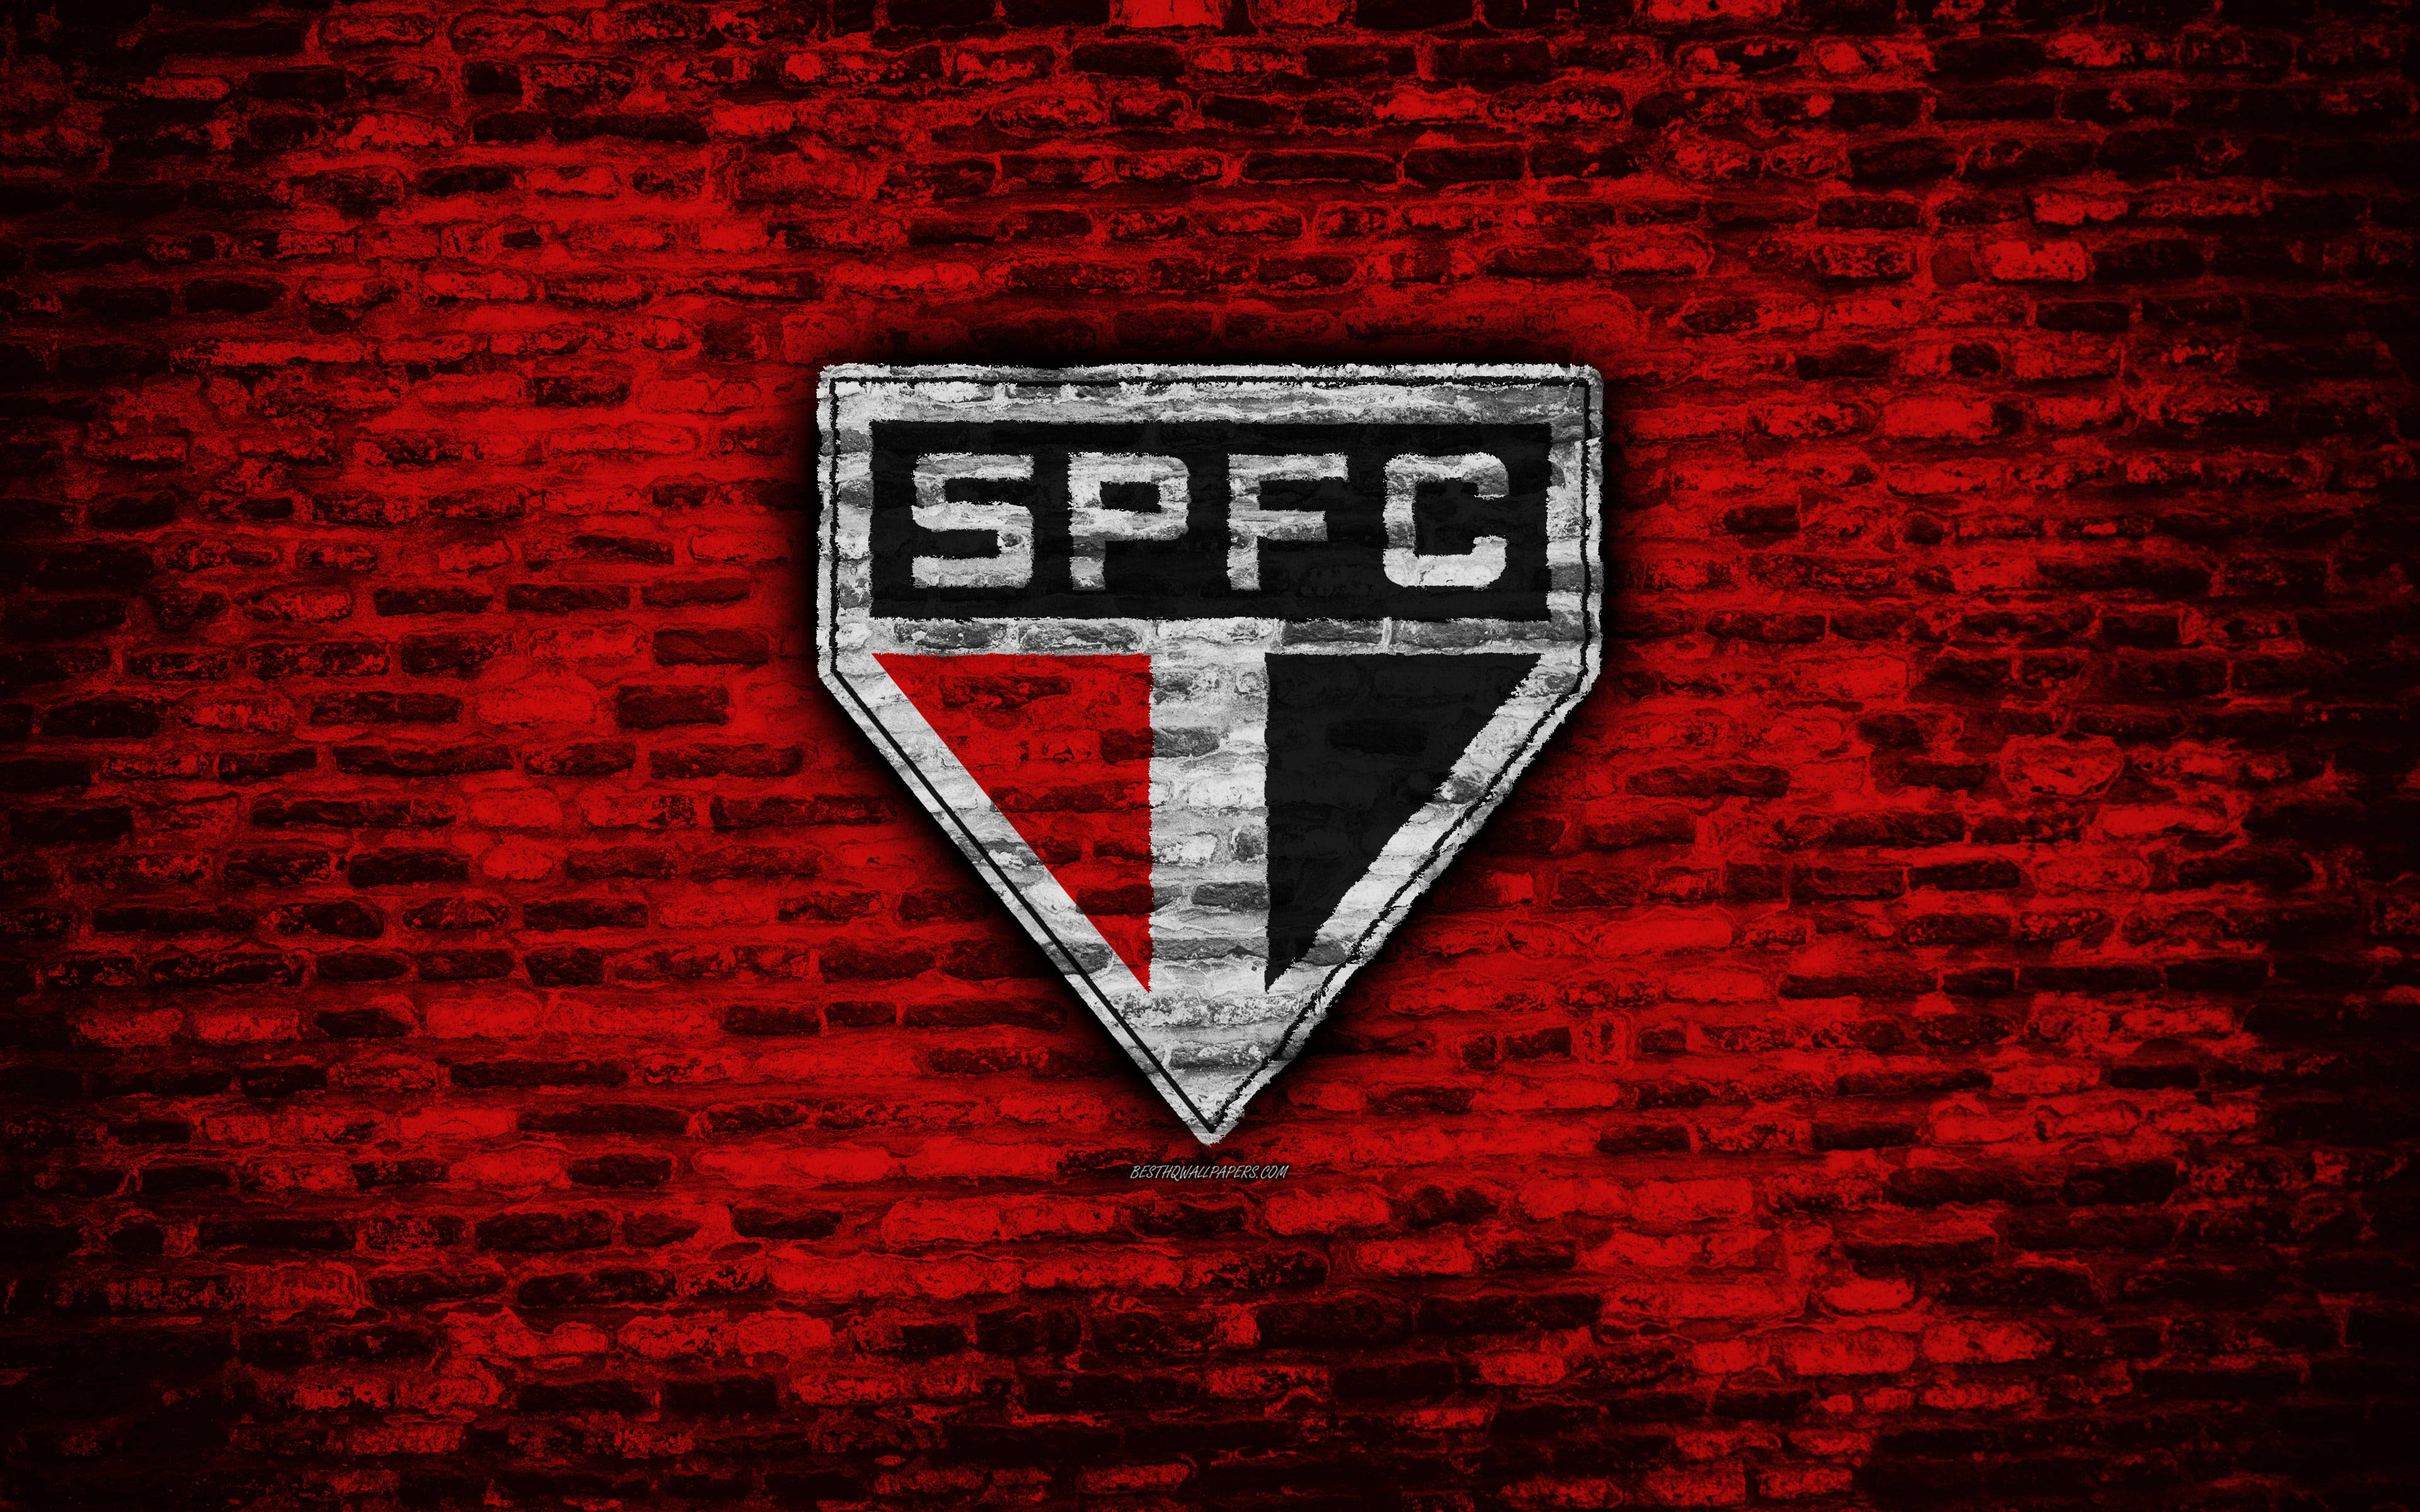 Logotipodel Sao Paulo Fc En Ladrillos Rojos. Fondo de pantalla